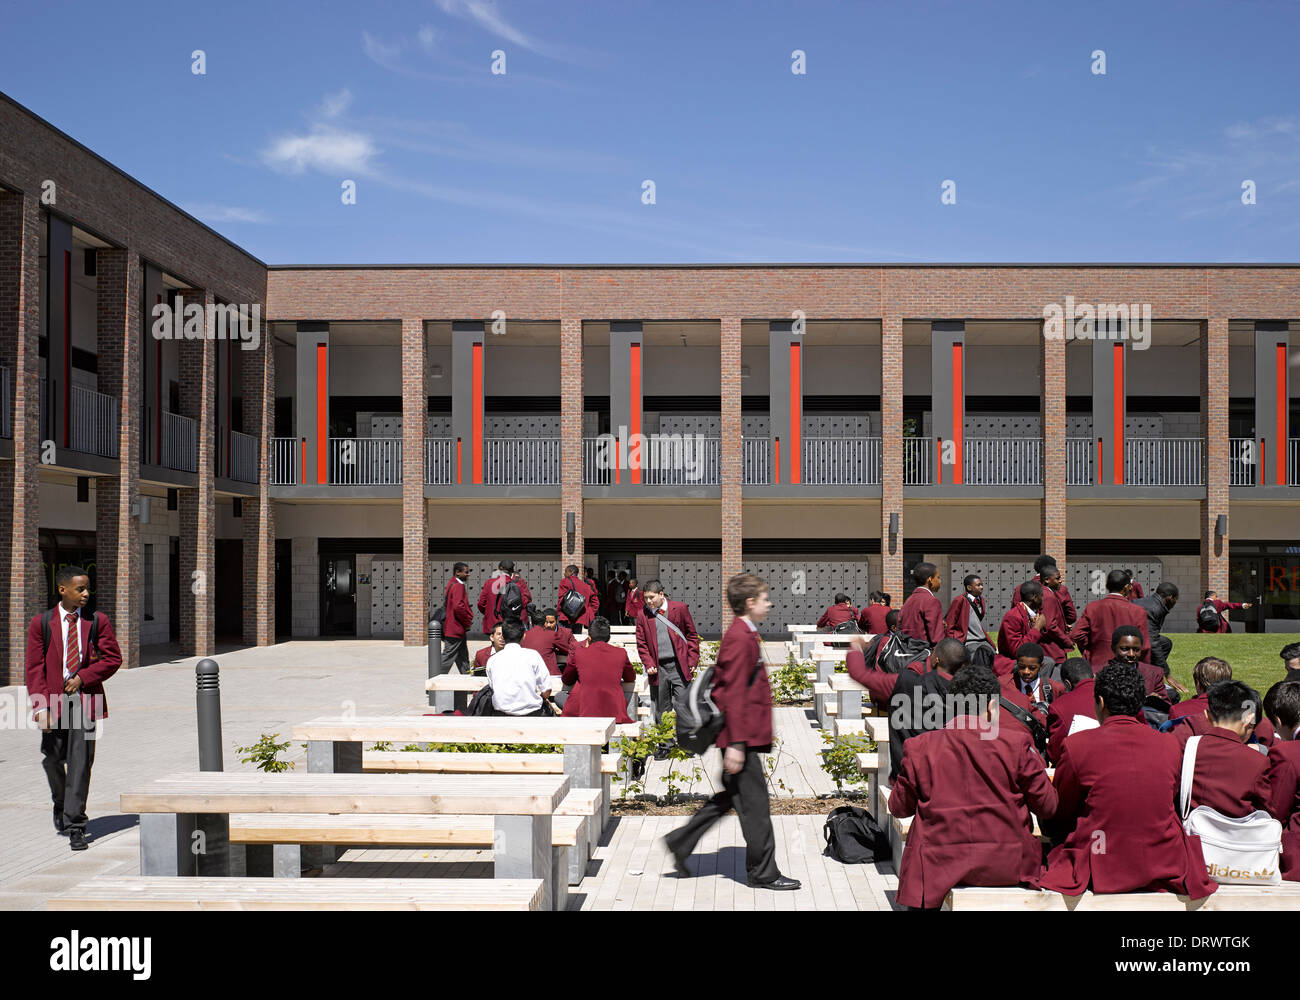 L'Apôtre saint Thomas College, Londres, Royaume-Uni. Architecte : Alliés et Morrison, 2013. Vue extérieure montrant nouveau bloc. Banque D'Images